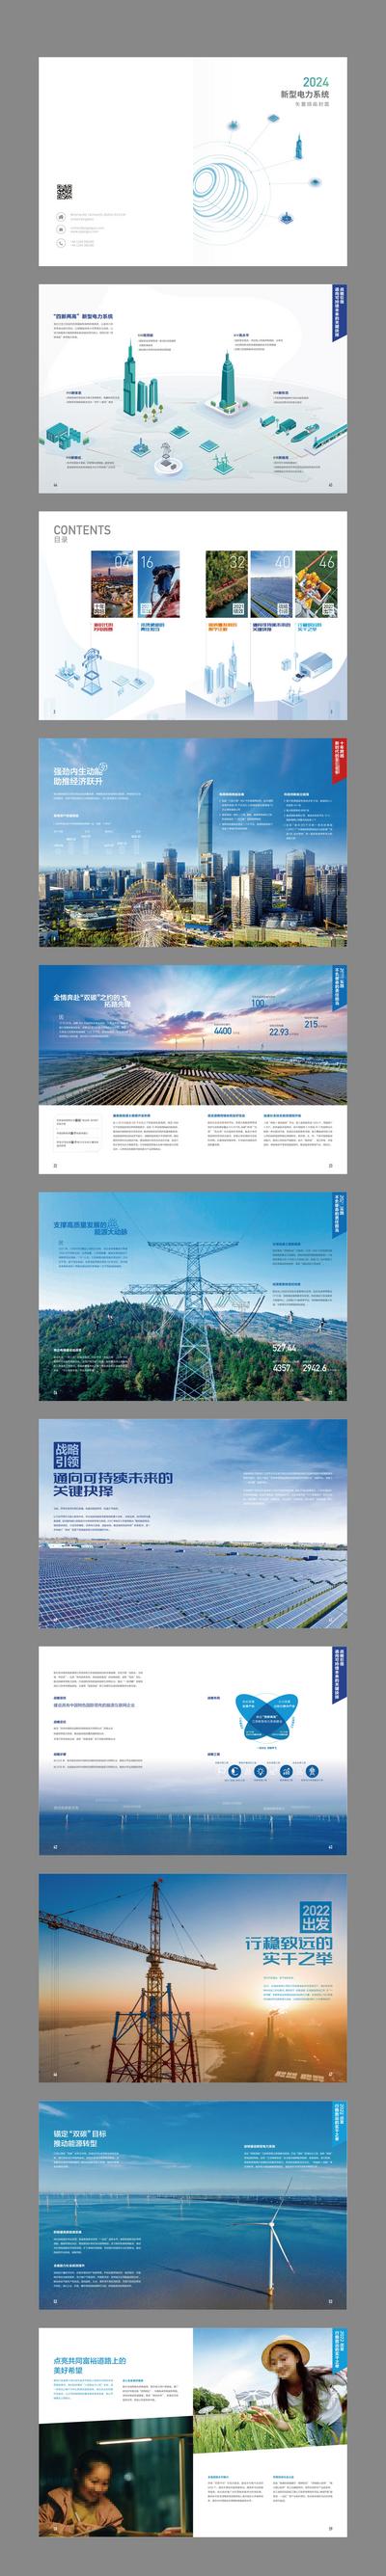 南门网 画册 宣传册 电力 智能 科技 新能源 数字化 互联网 2.5D 城市 插画